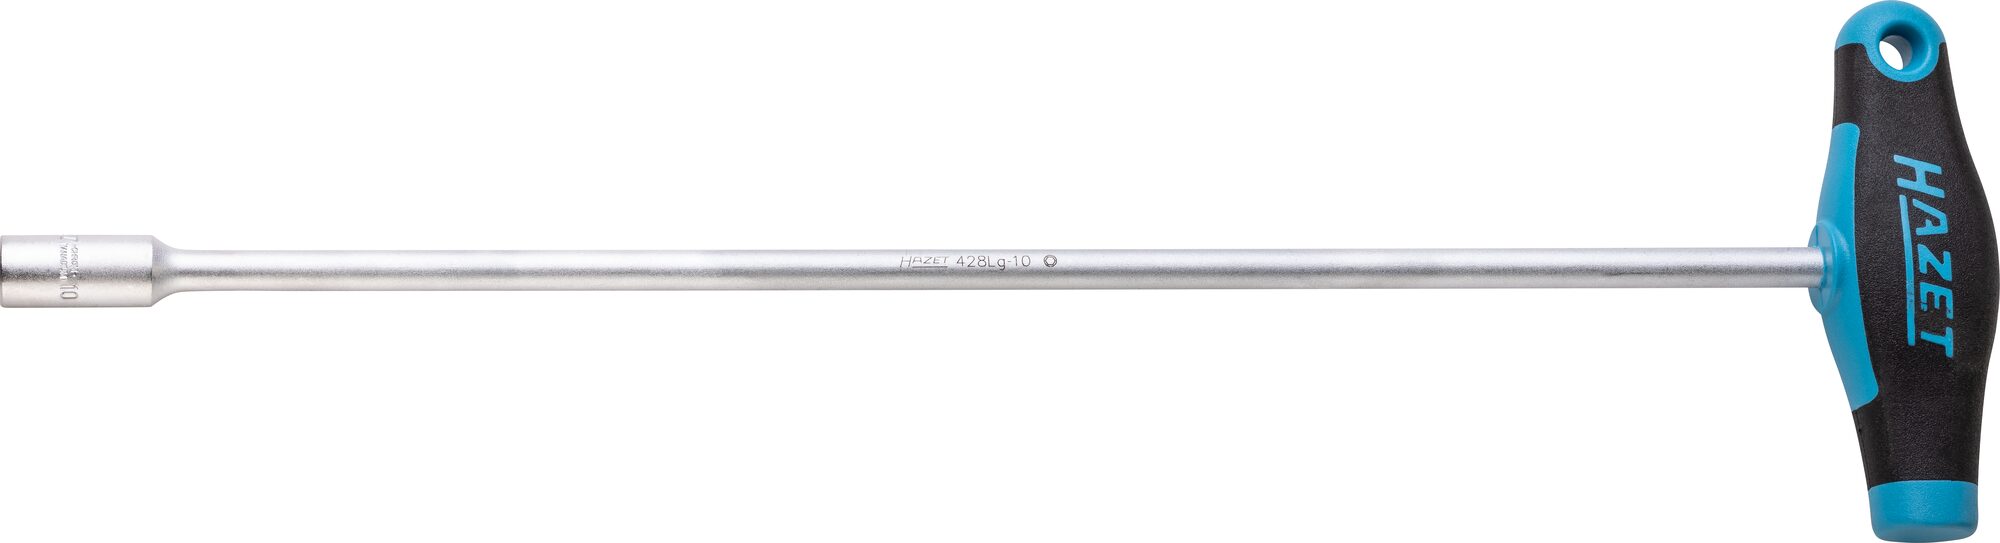 HAZET Steckschlüssel · mit T-Griff 428LG-10 · Außen Sechskant Profil · 10 mm